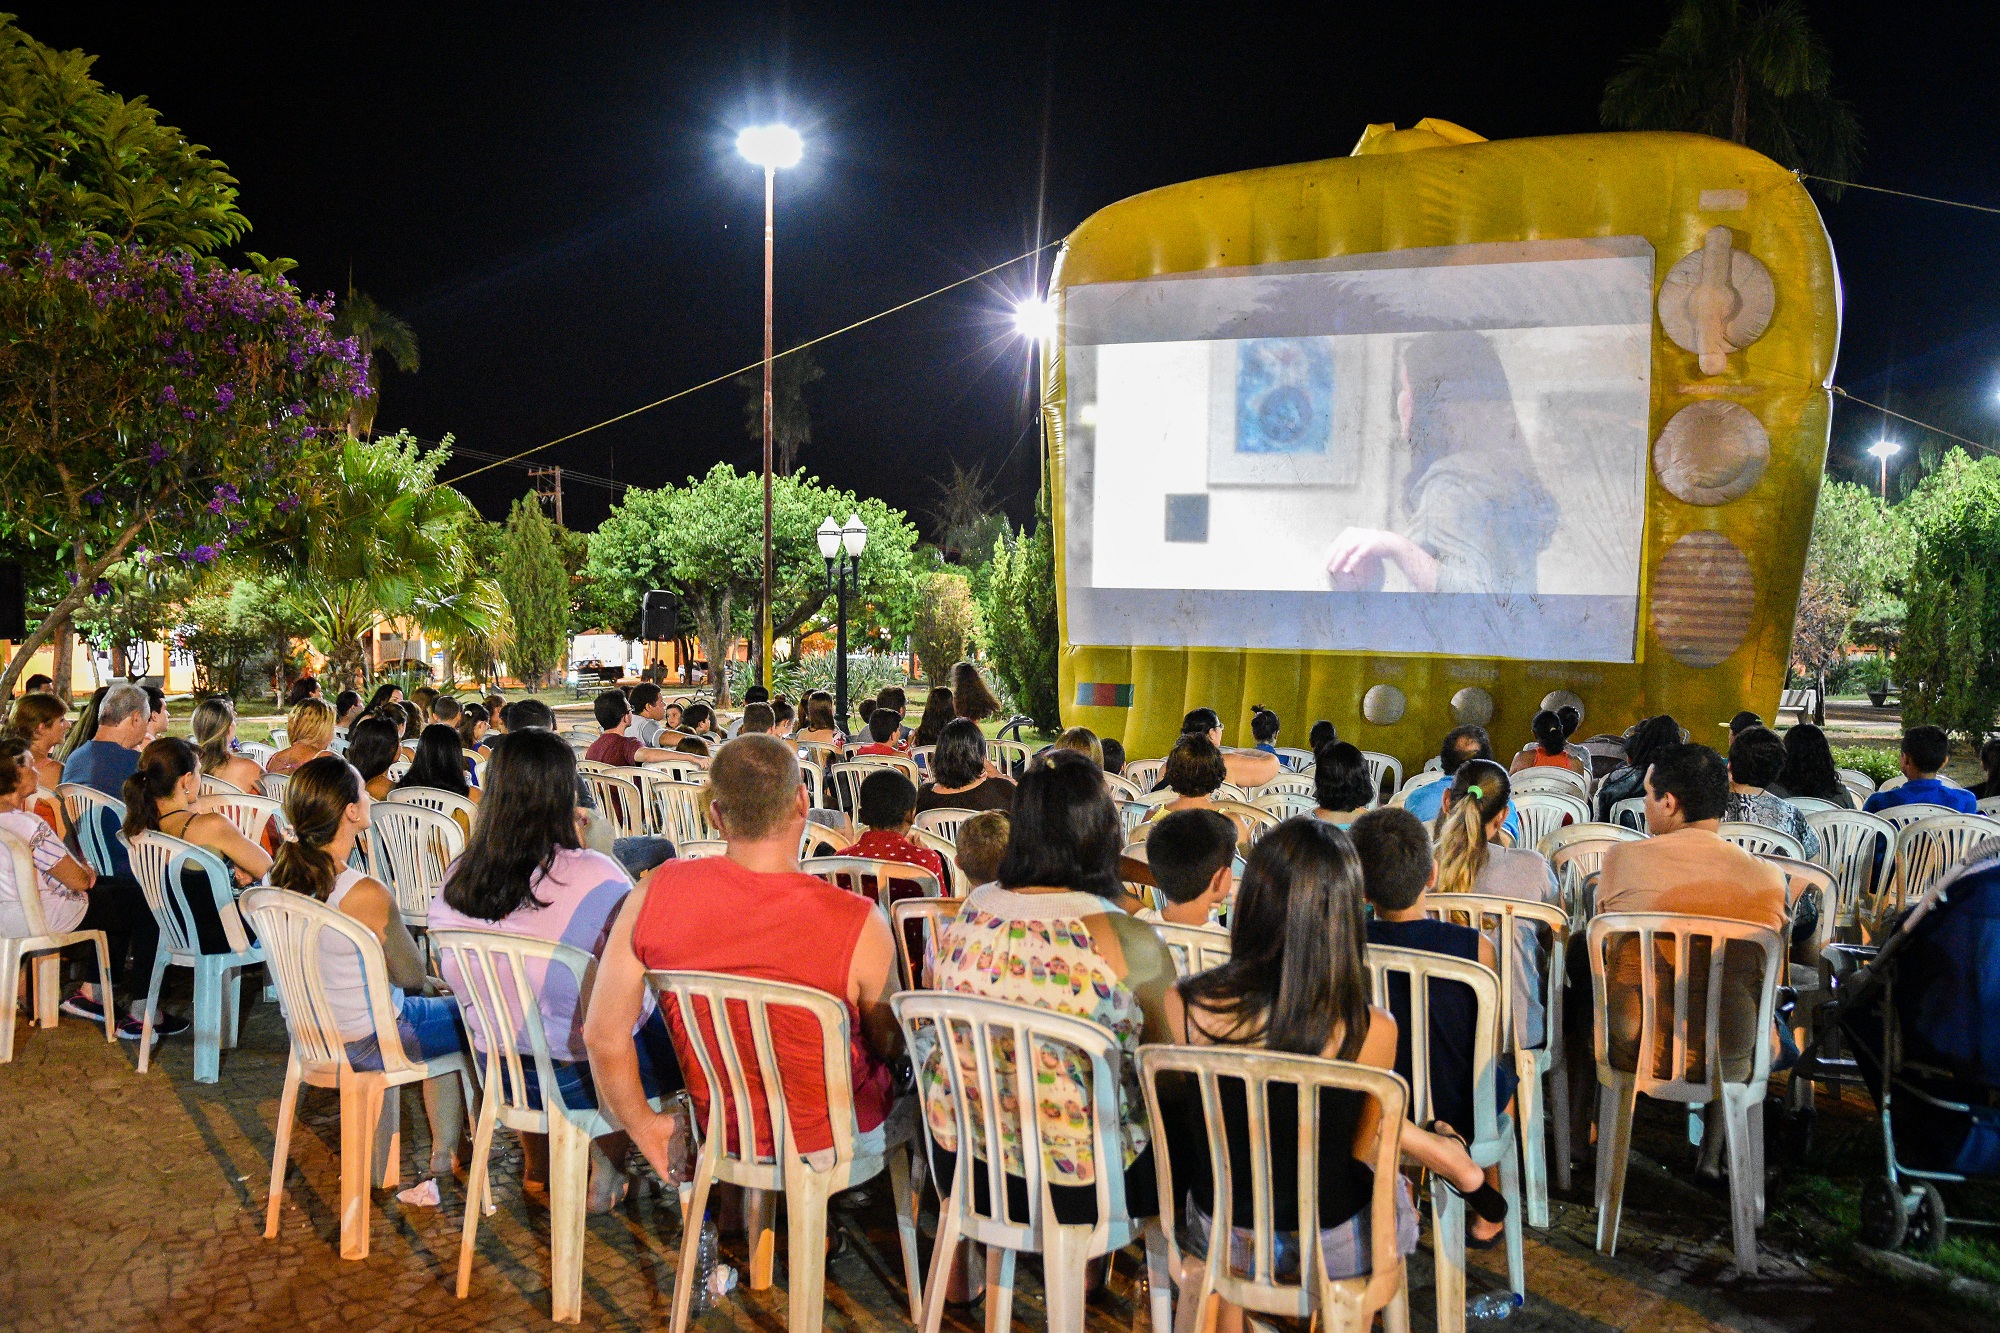 Pessoas assistem a sessão de cinema ao ar livre em Urupês. Foto: Luís Fernando da Silva / Prefeitura de Urupês.